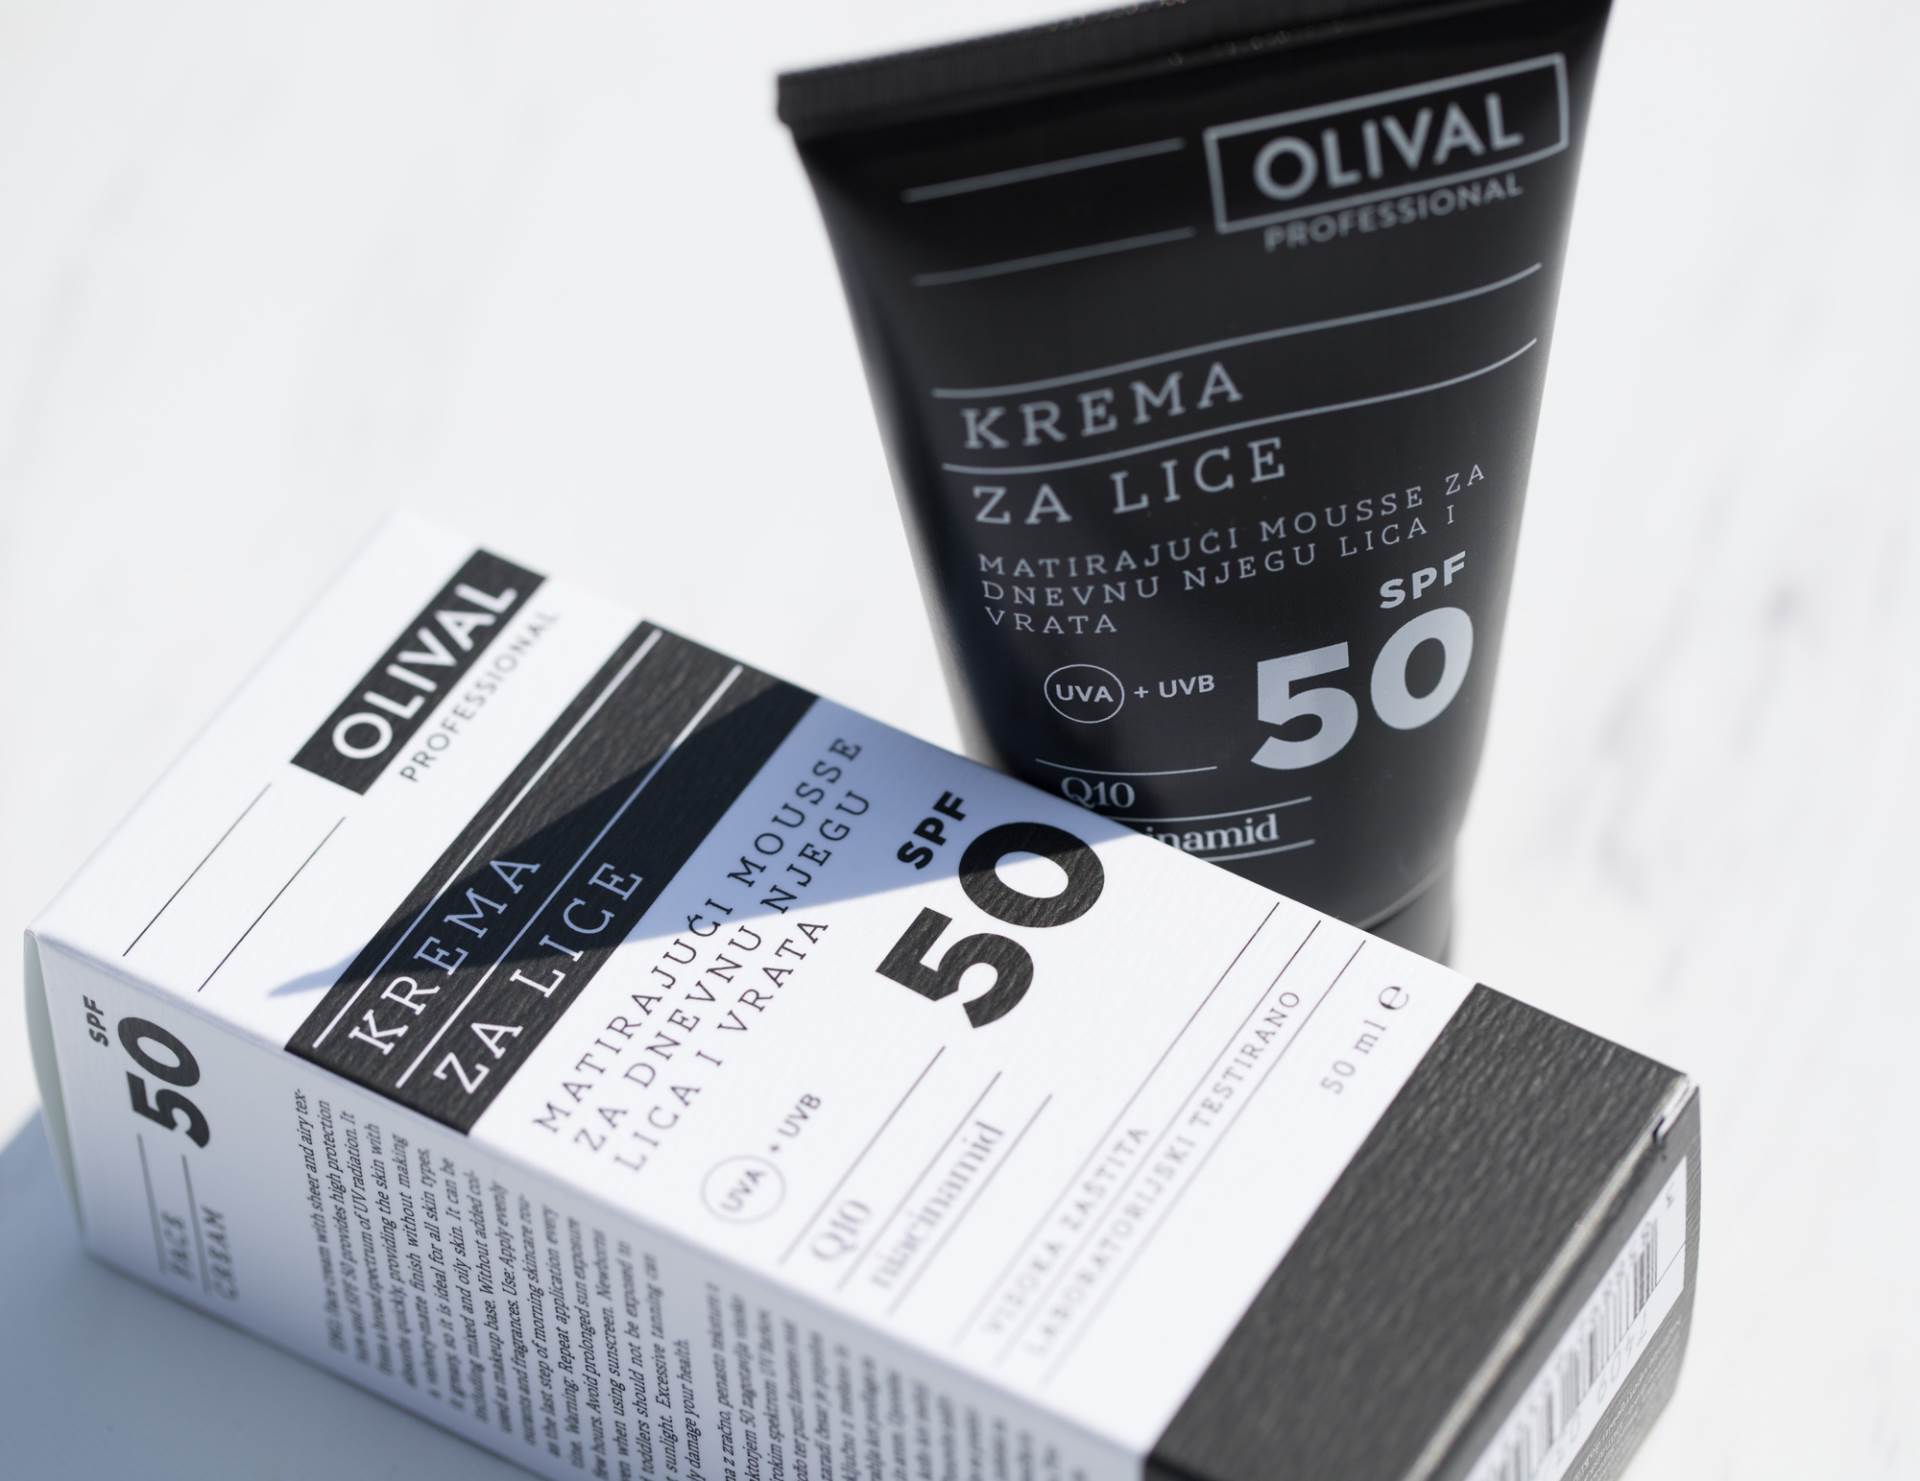 Olival Professional predstavlja nove SPF proizvoda za svakodnevnu upotrebu